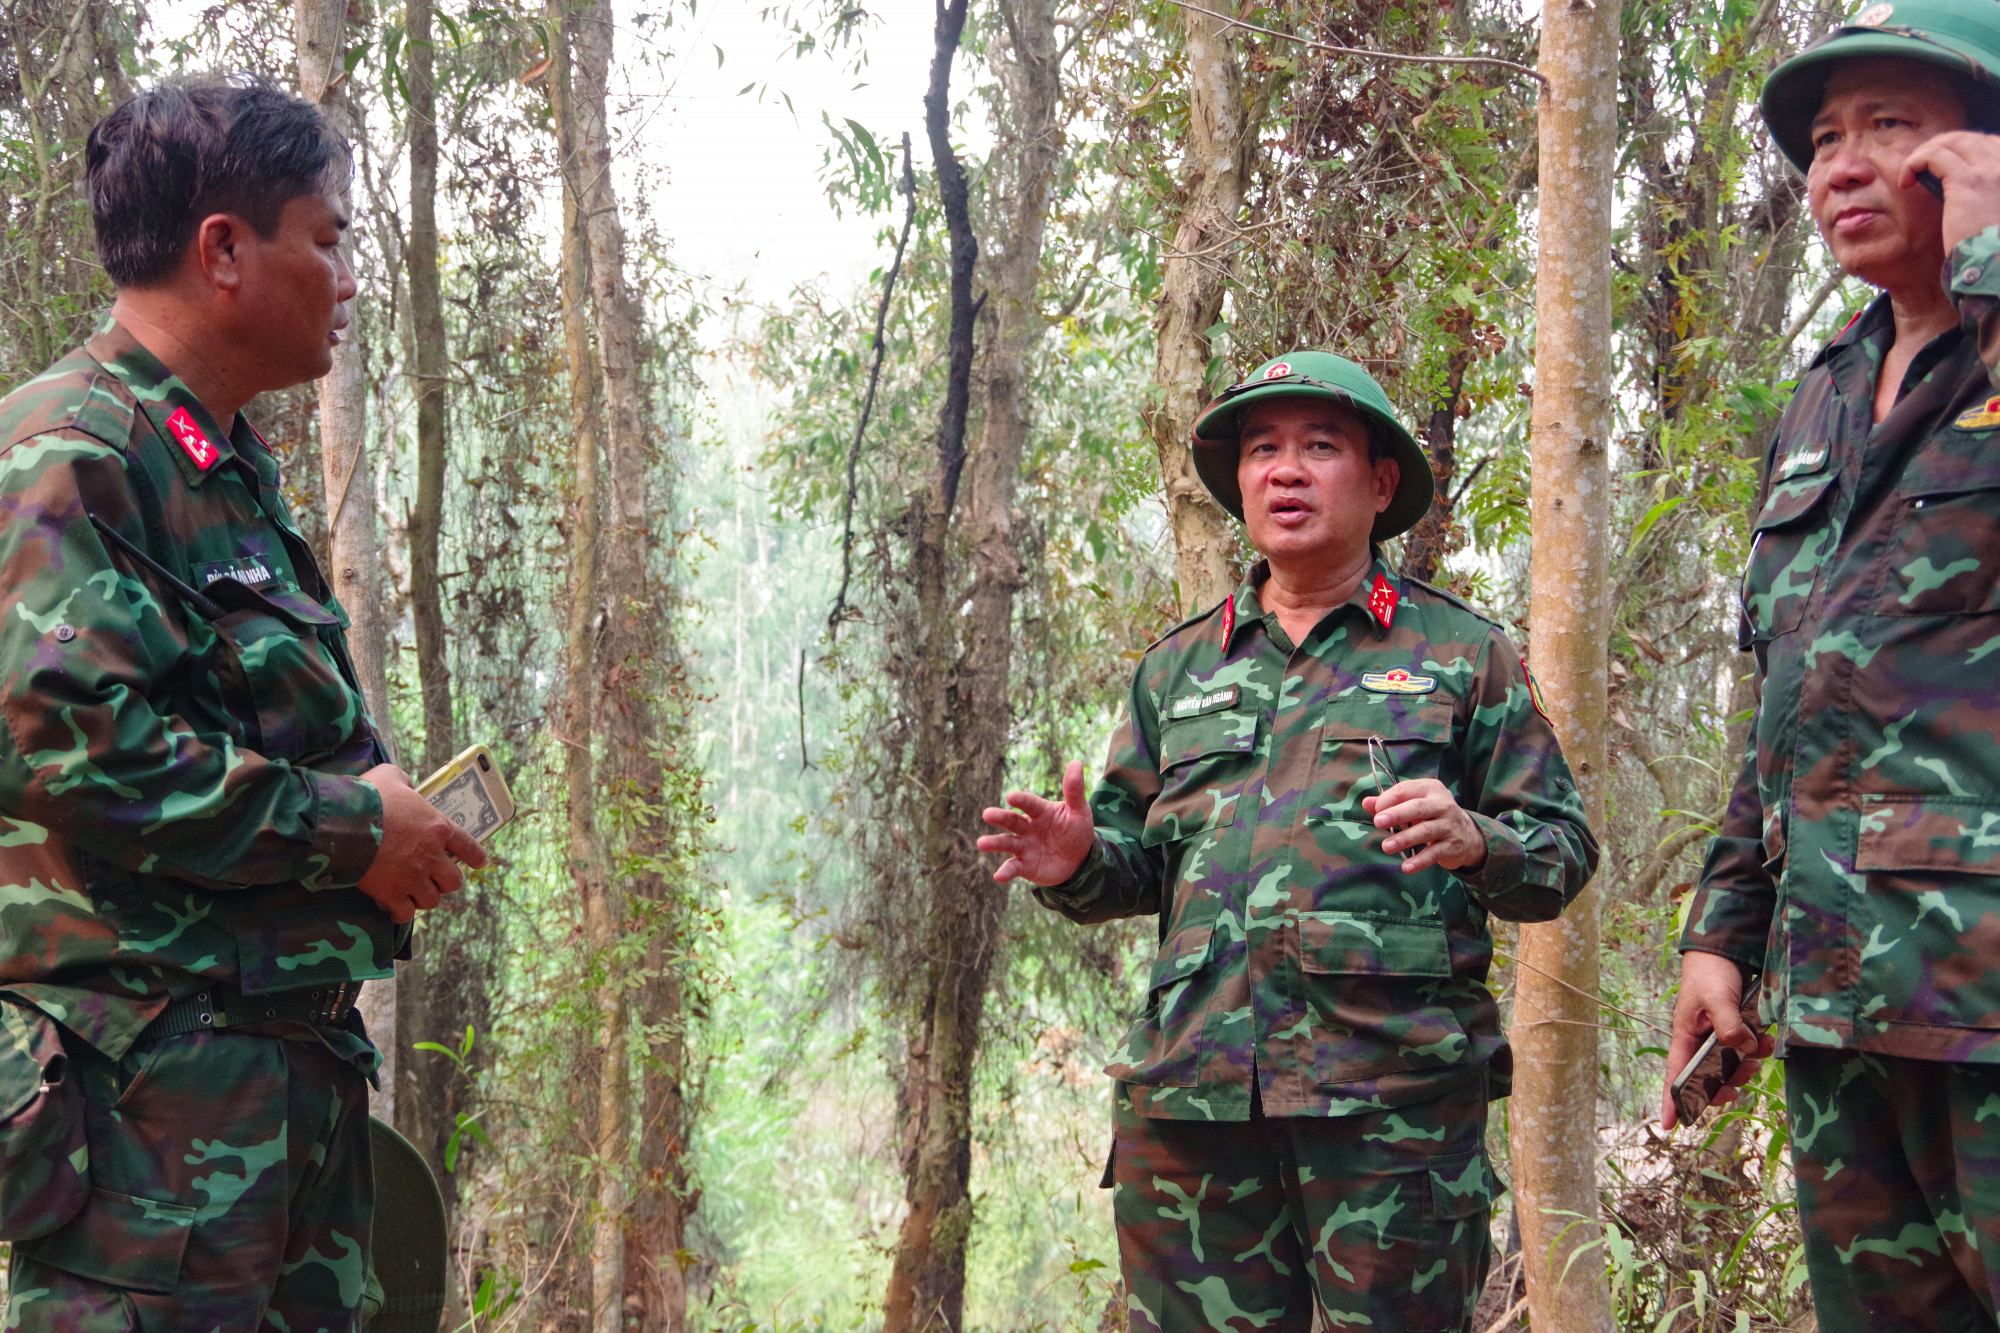 Đại tá Nguyễn Văn Ngành - Chỉ huy trưởng Bộ CHQS tỉnh Kiên Giang đã trực tiếp đến hiện trường nắm tình hình và chỉ đạo các lực lượng tổ chức nhiều biện pháp để dập lửa, ngăn đám cháy lây lan ra các khu vực khác. 